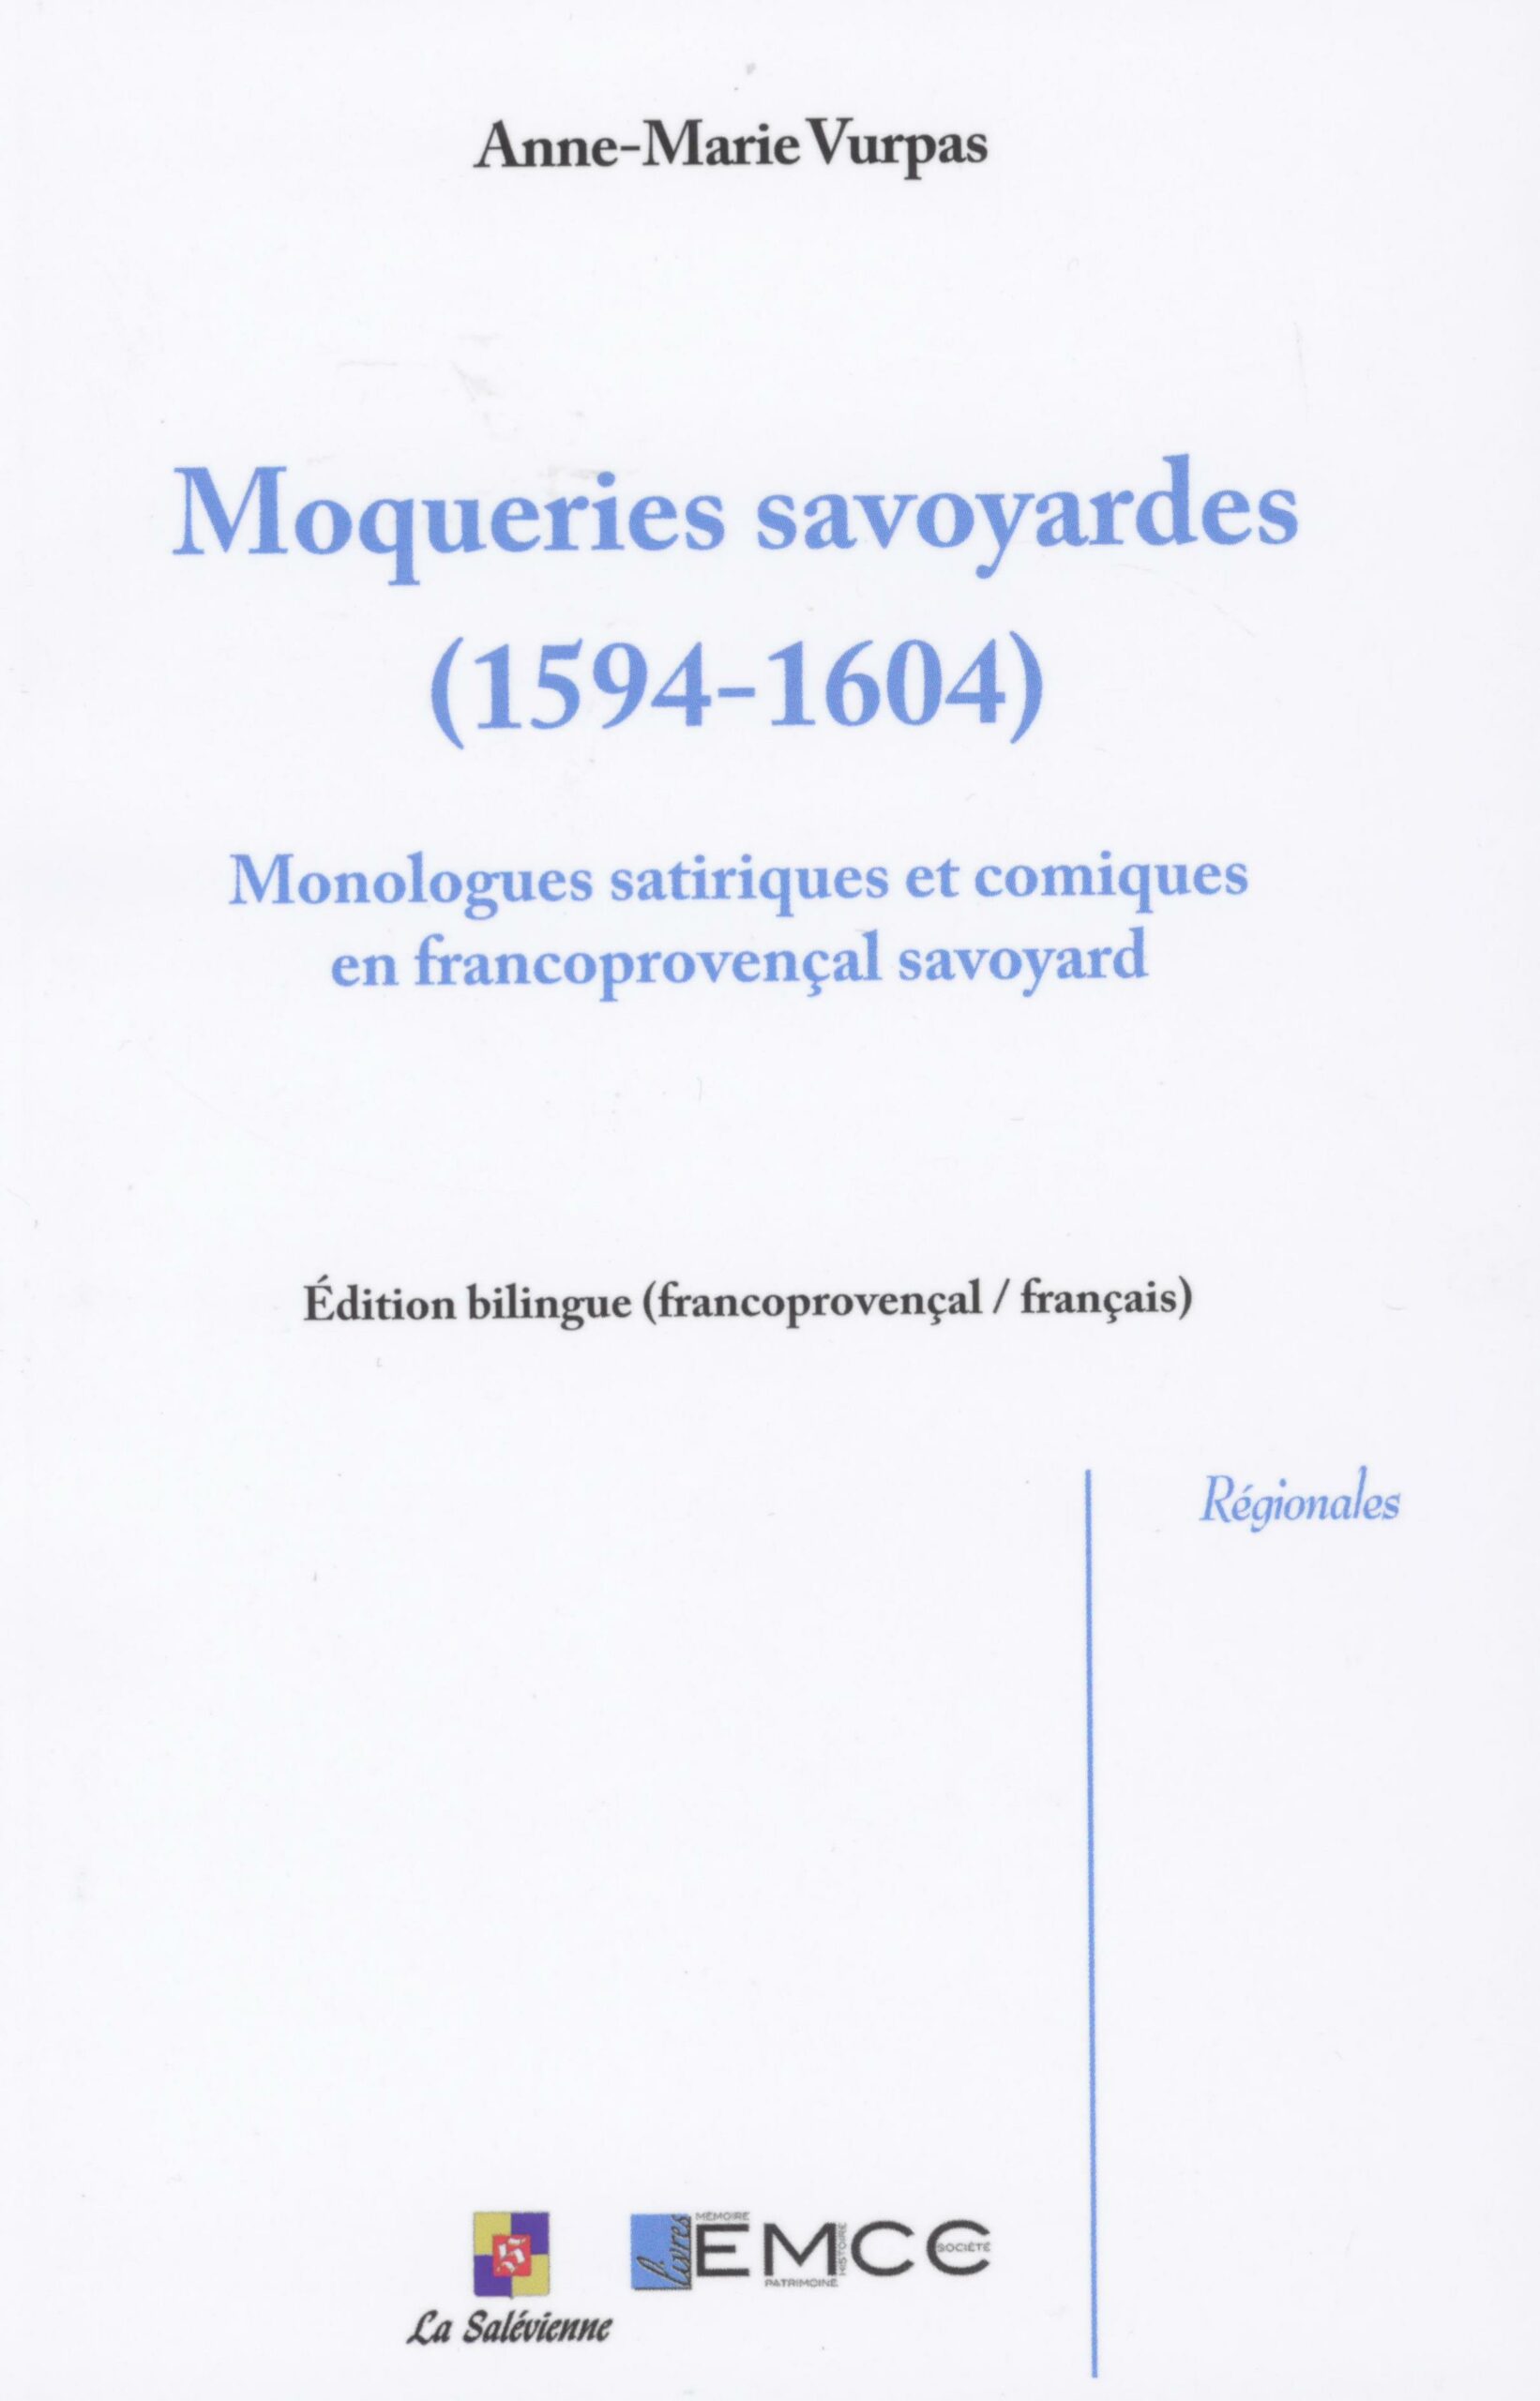 Moqueries savoyardes (1594-1604) - publication - IPG